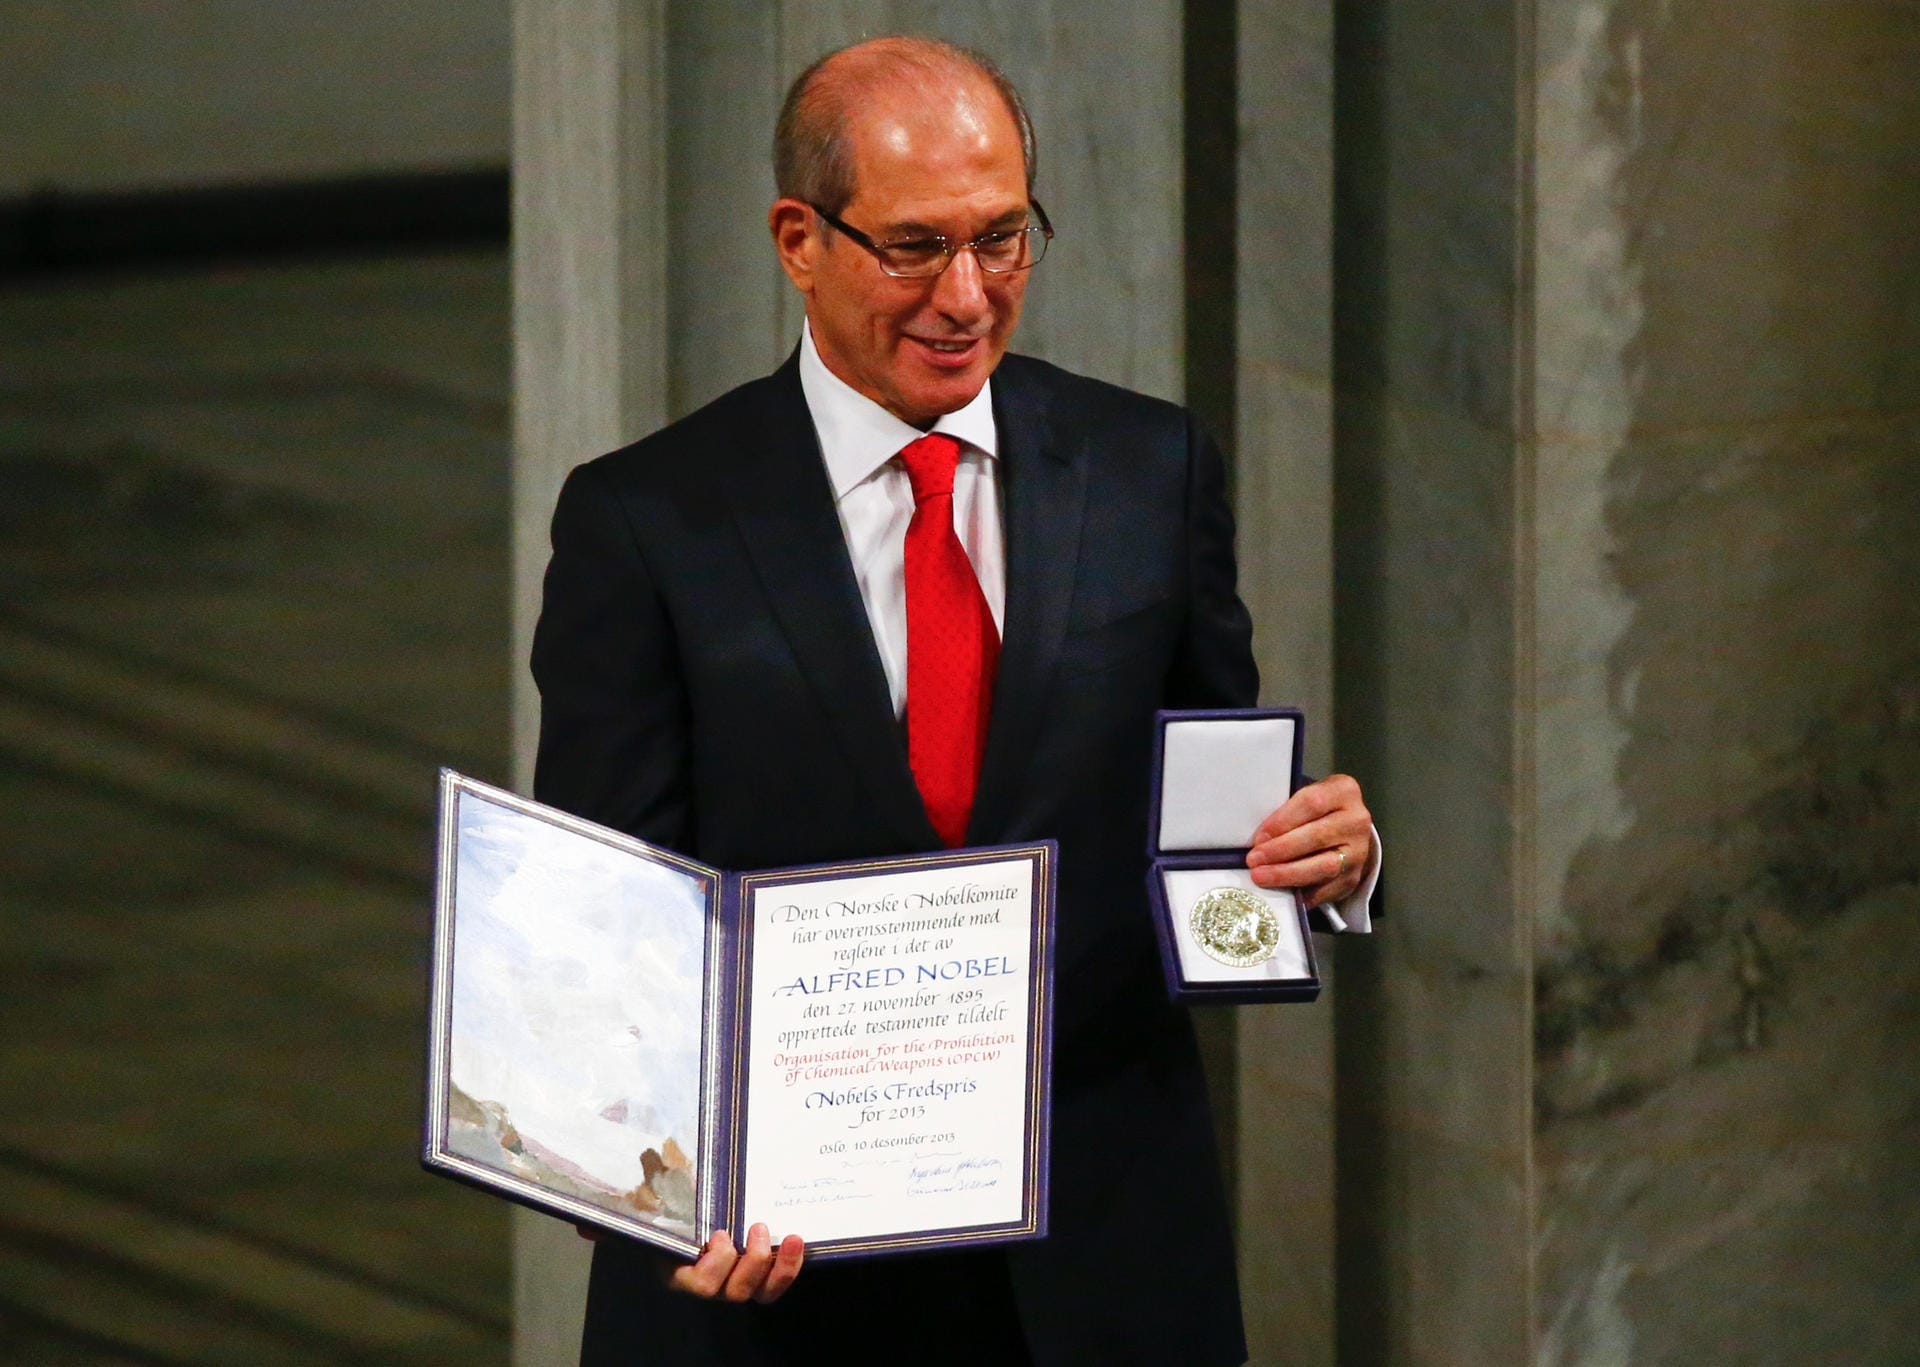 Ahmet Uzumcu, 2013: Der Generaldirektor nimmt den Preis für die Organisation für das Verbot chemischer Waffen (OPCW) in Empfang. Sie erhalten die Auszeichnung für ihre umfänglichen Bemühungen zur Beseitigung chemischer Waffen.